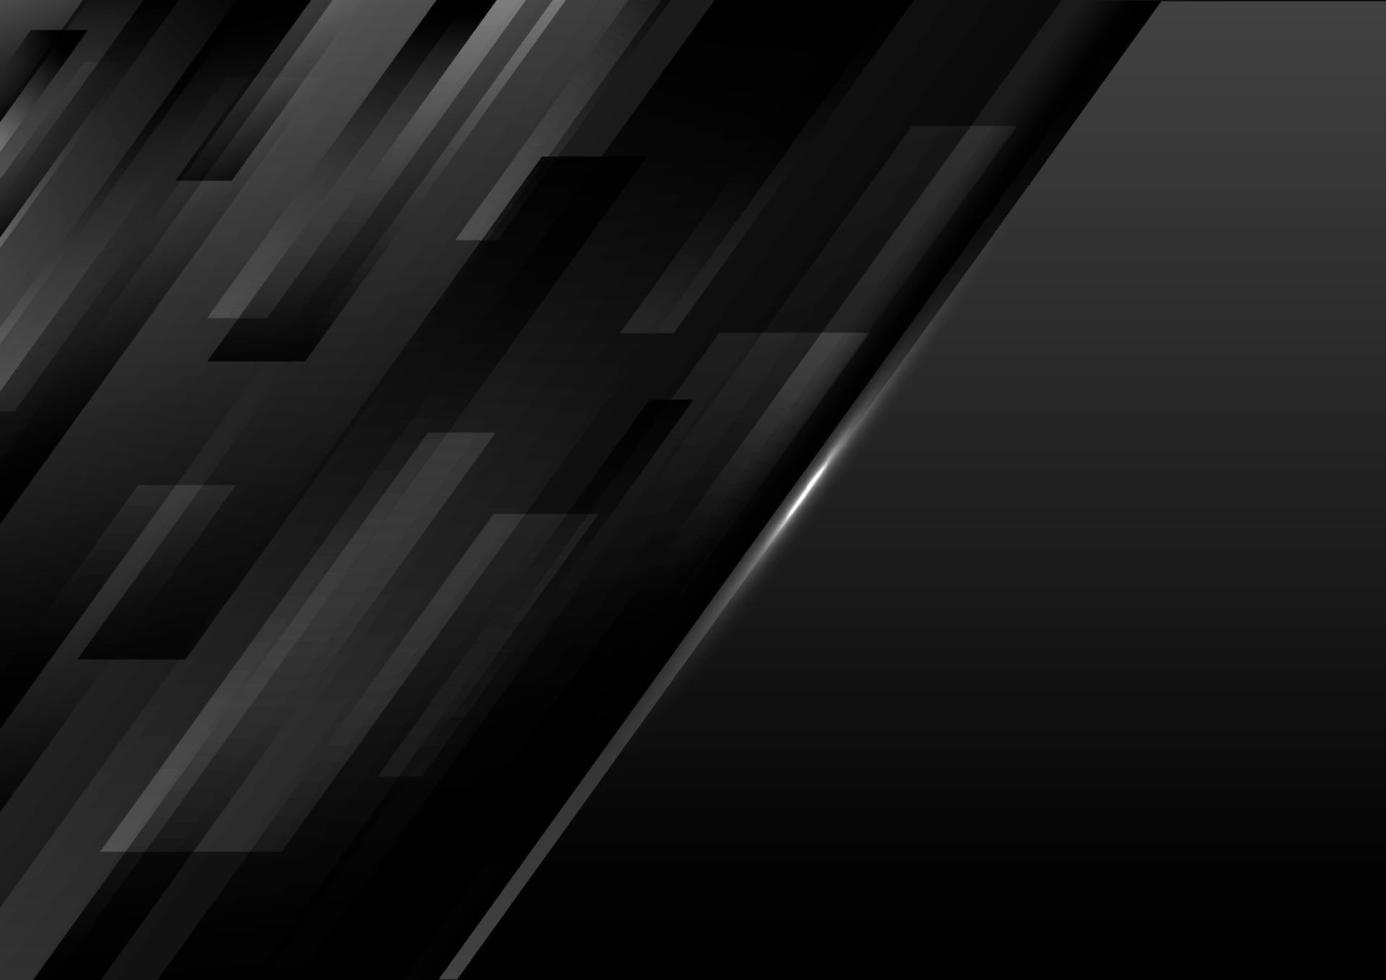 schwarze geometrische diagonale Streifen der abstrakten modernen Schablone auf dunklem Hintergrund vektor